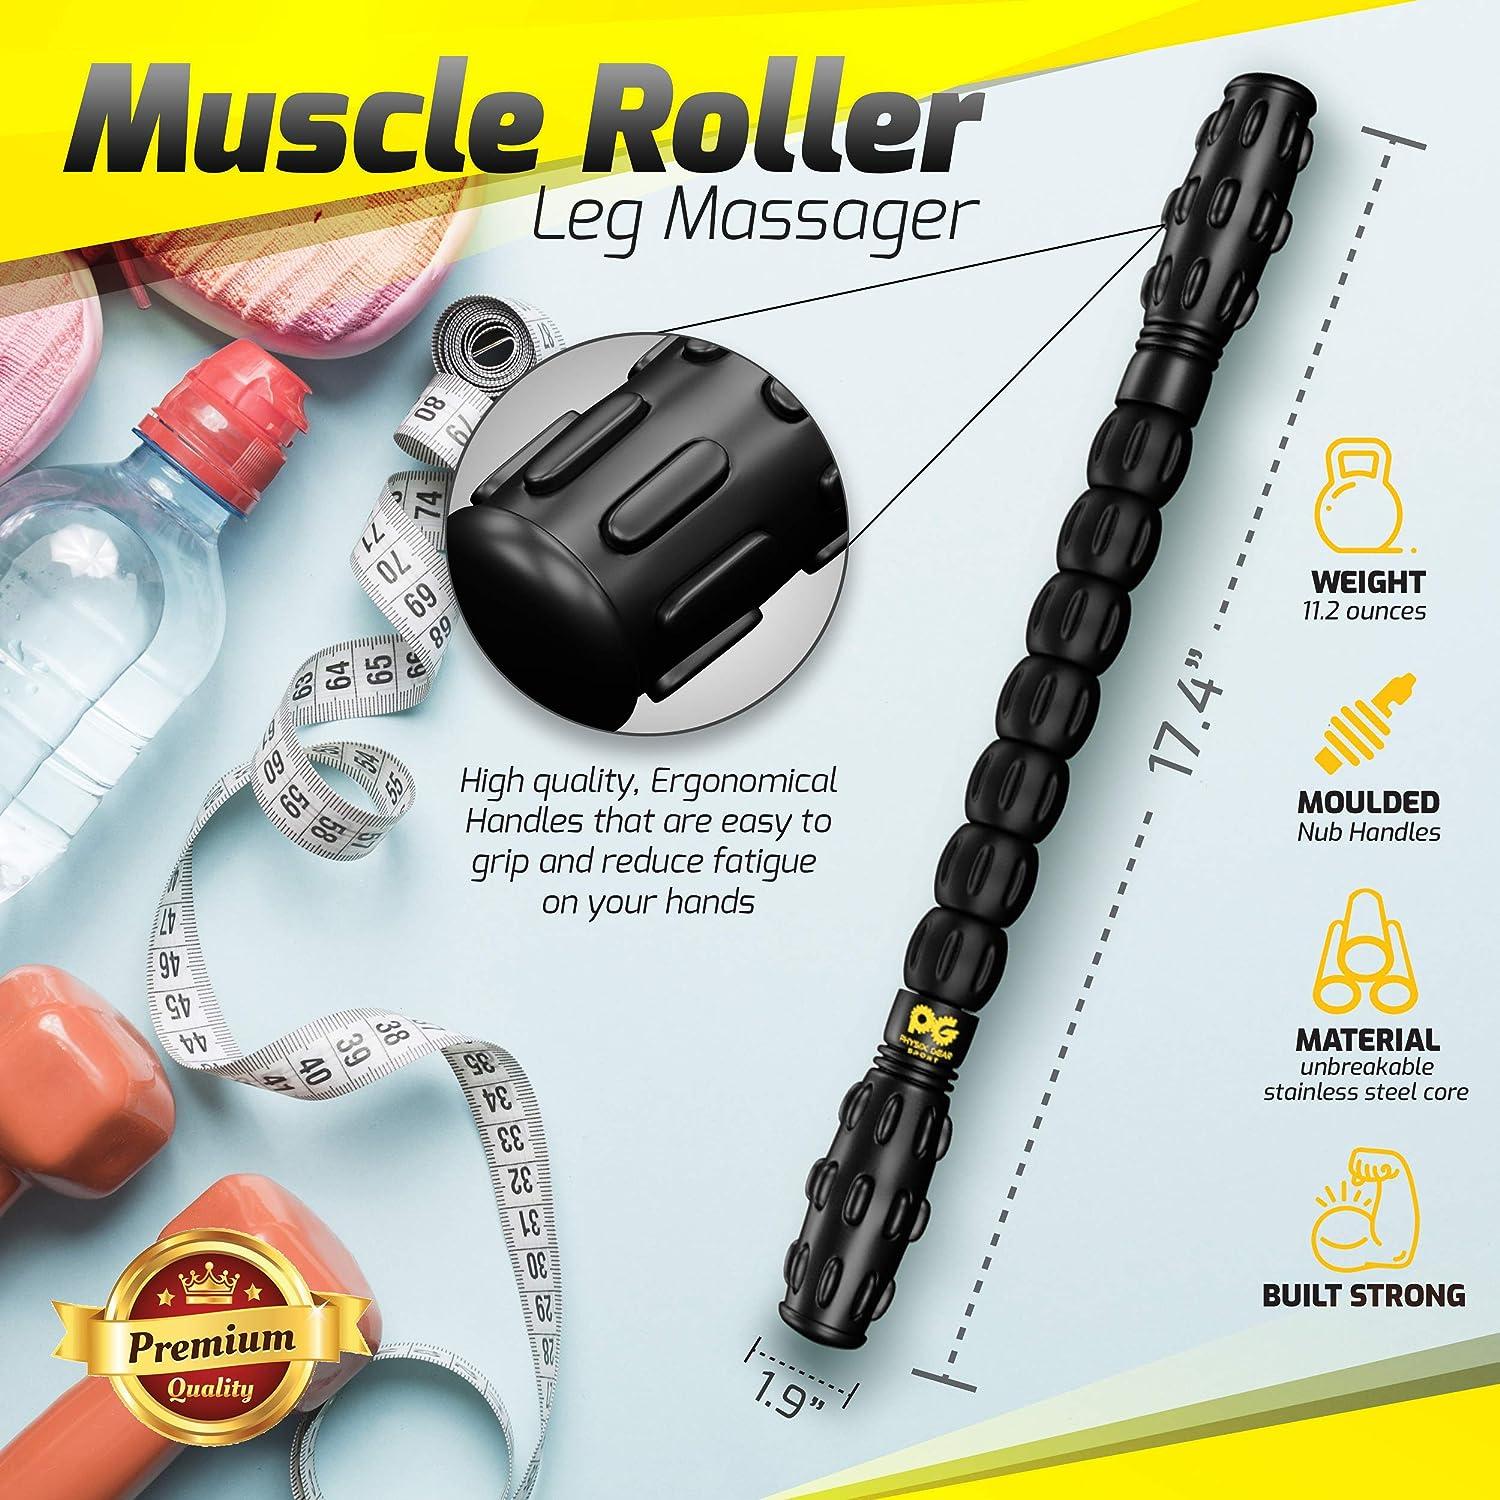 Physix Muscle Roller Stick (1 Massage Stick) - Calf/Quads/Foot